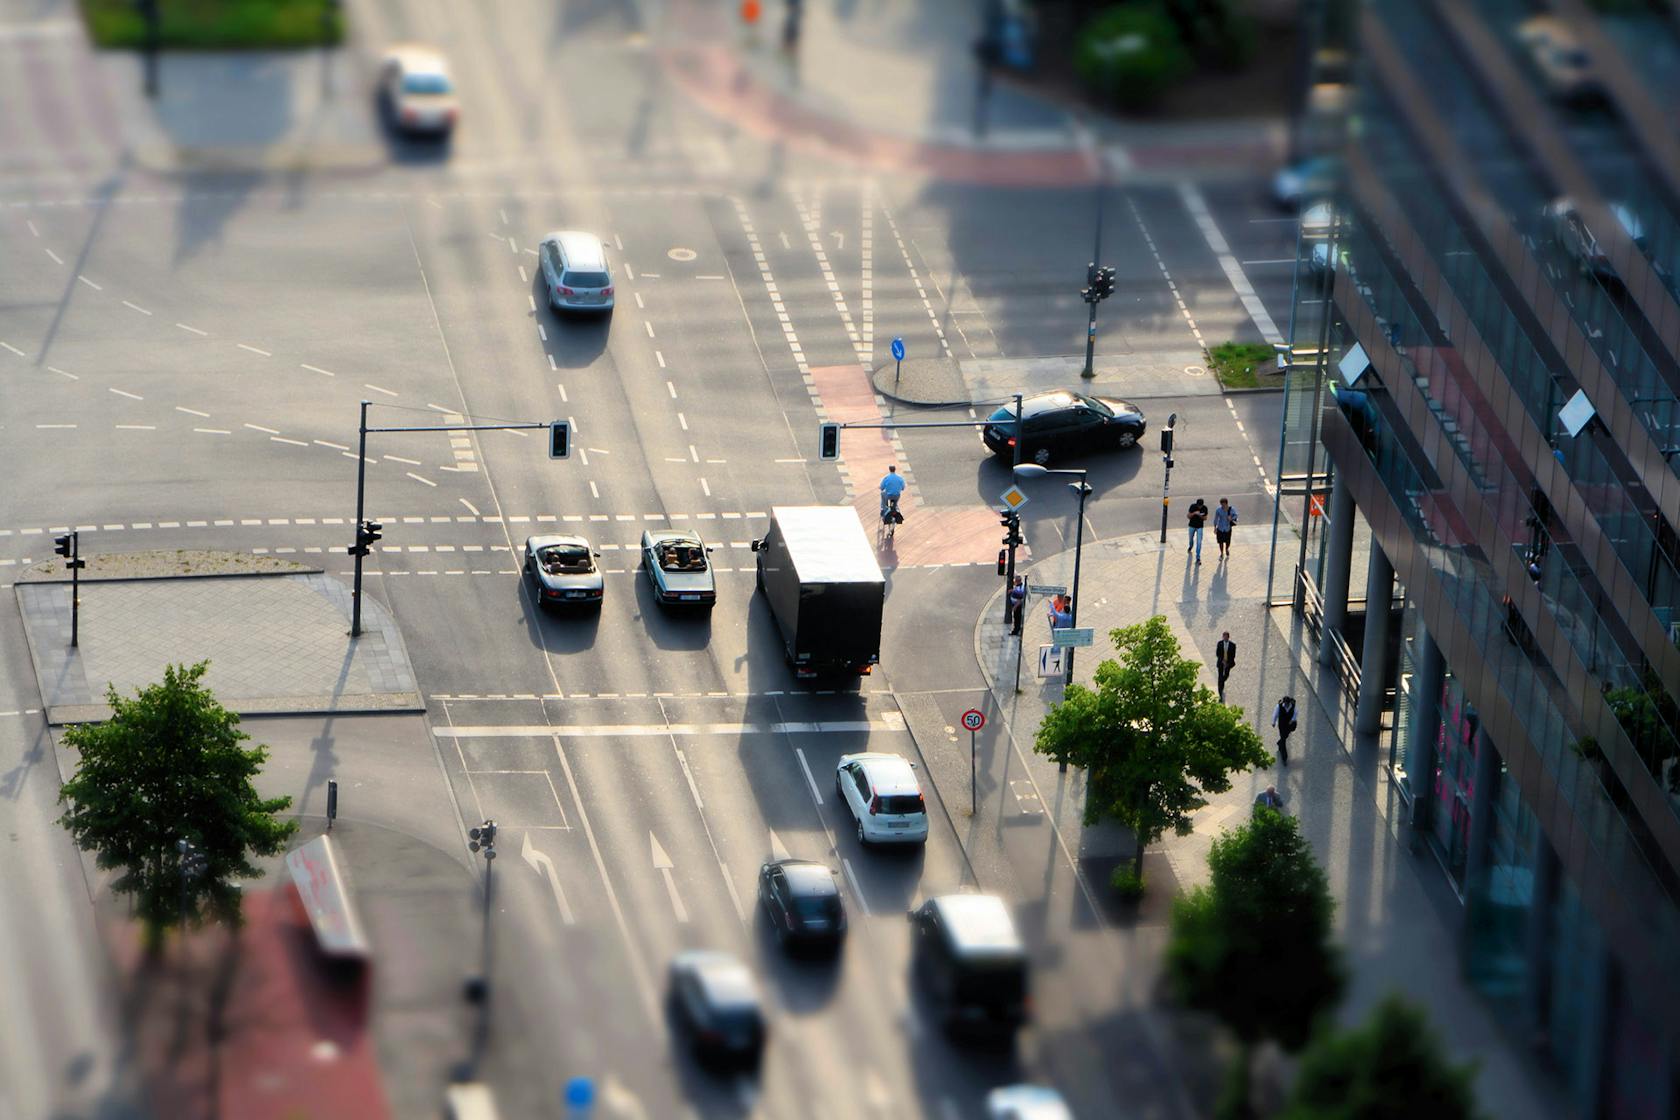 Des systèmes de péage innovants pour une gestion efficace du trafic en ville